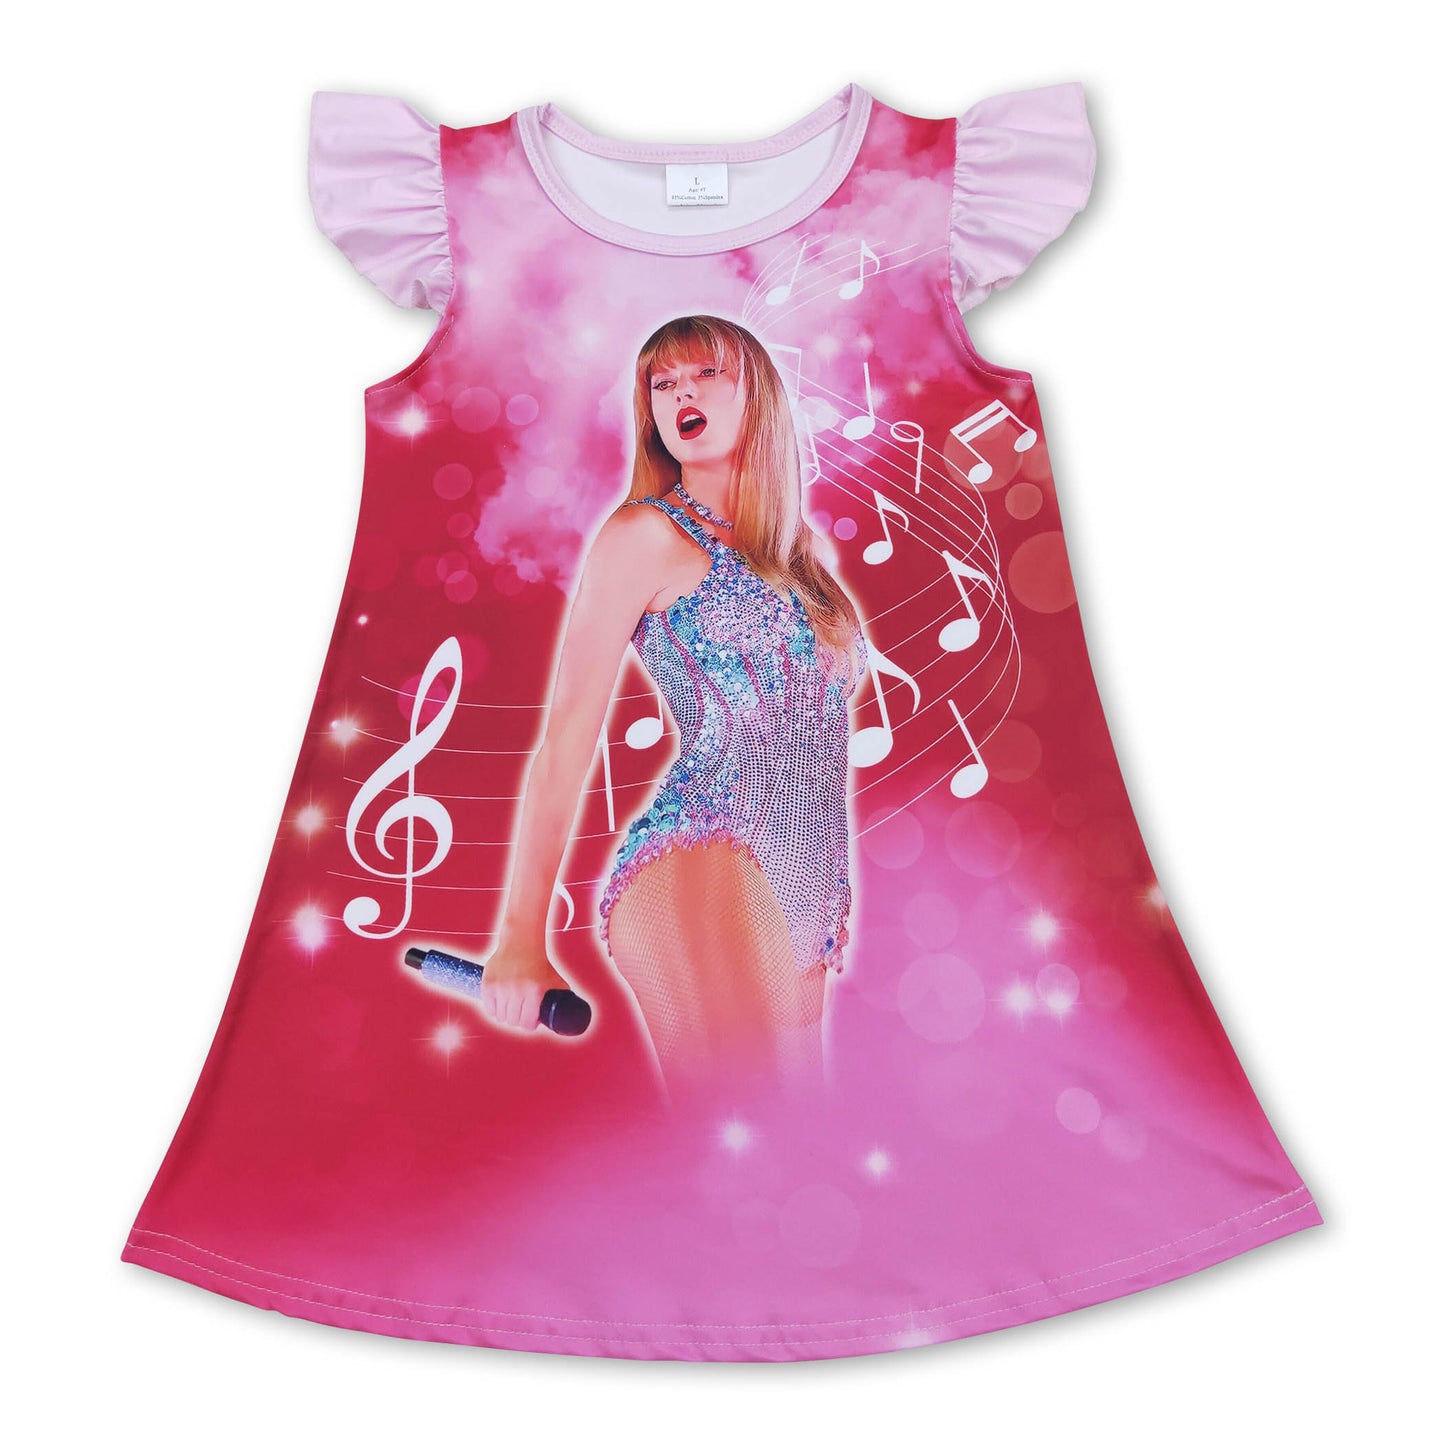 Pink flutter sleeves music singer girls dresses